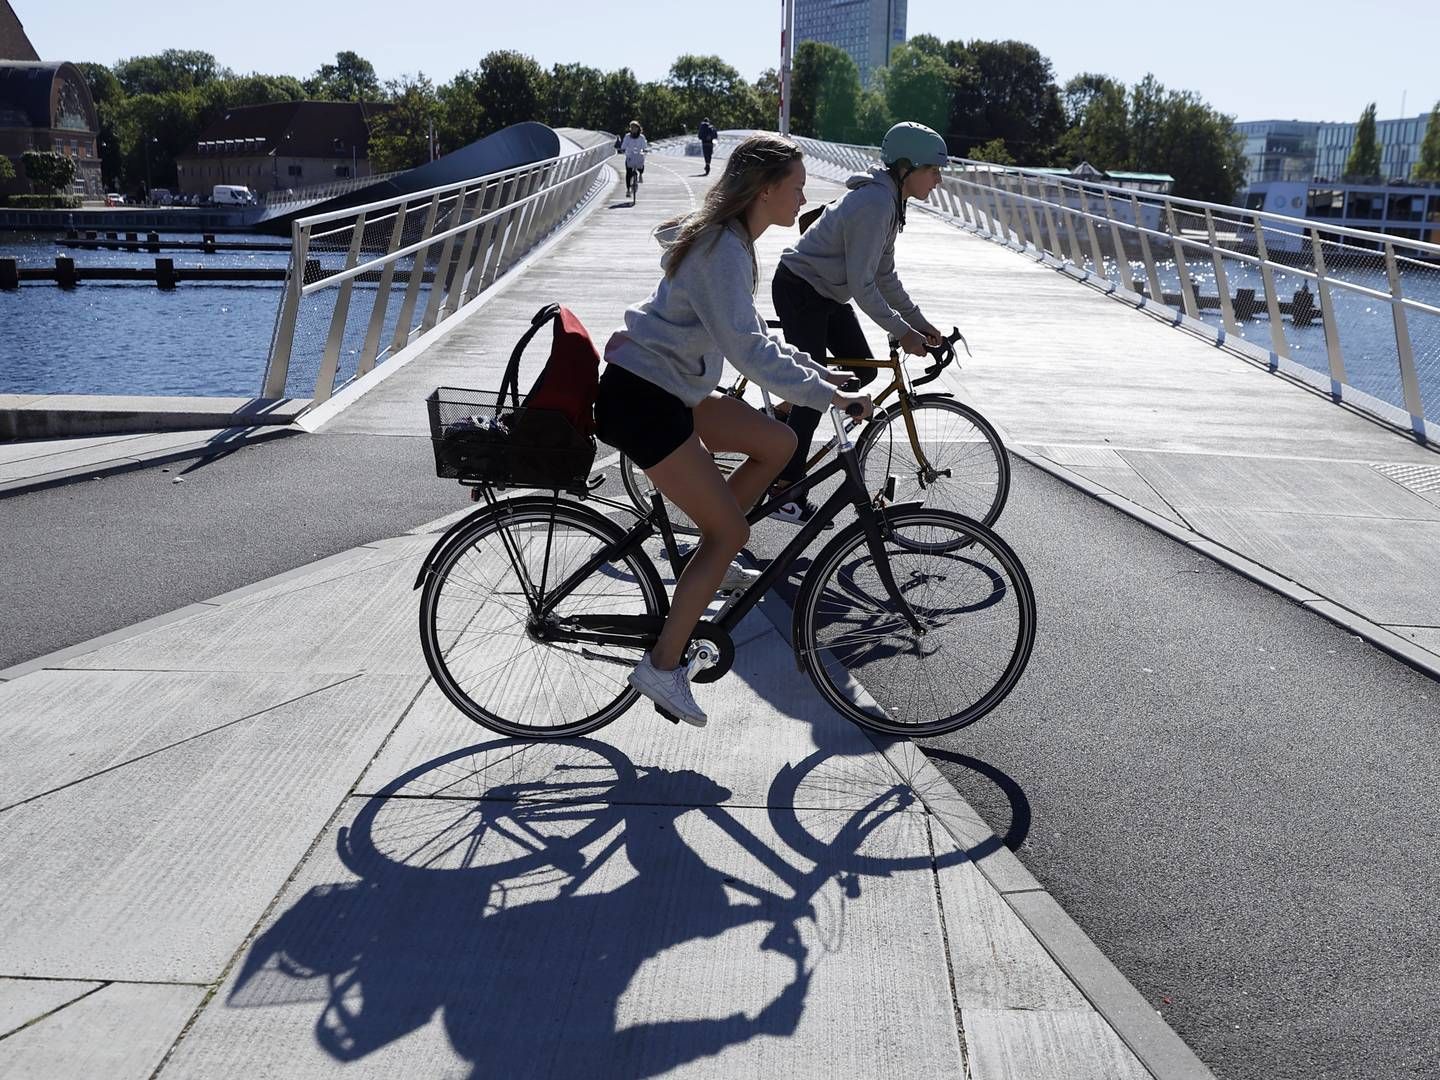 Cykling er blevet mere populært i flere EU-lande under pandemien. Det skal EU drage fordel af, mener flere lande. | Foto: Jens Dresling